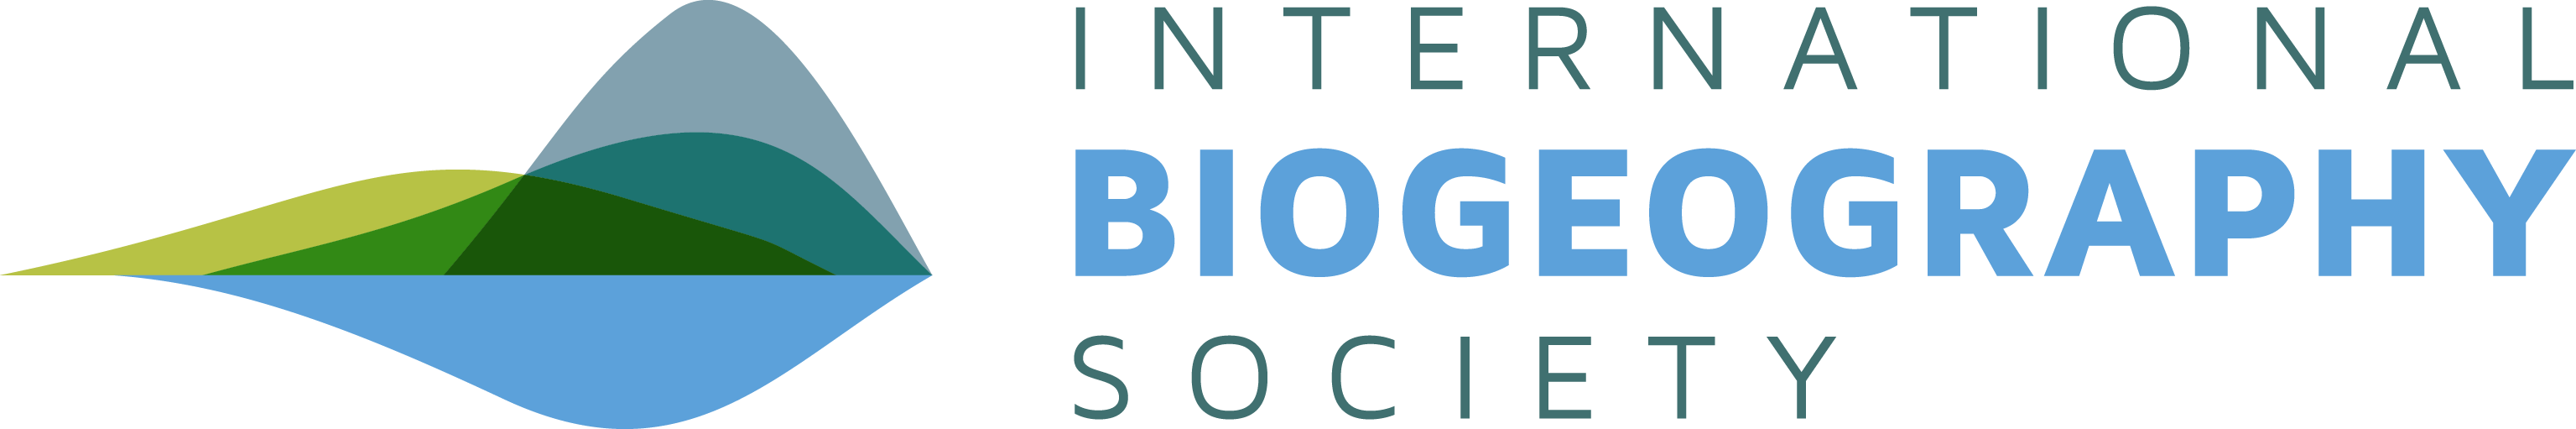 logo for International Biogeography Society